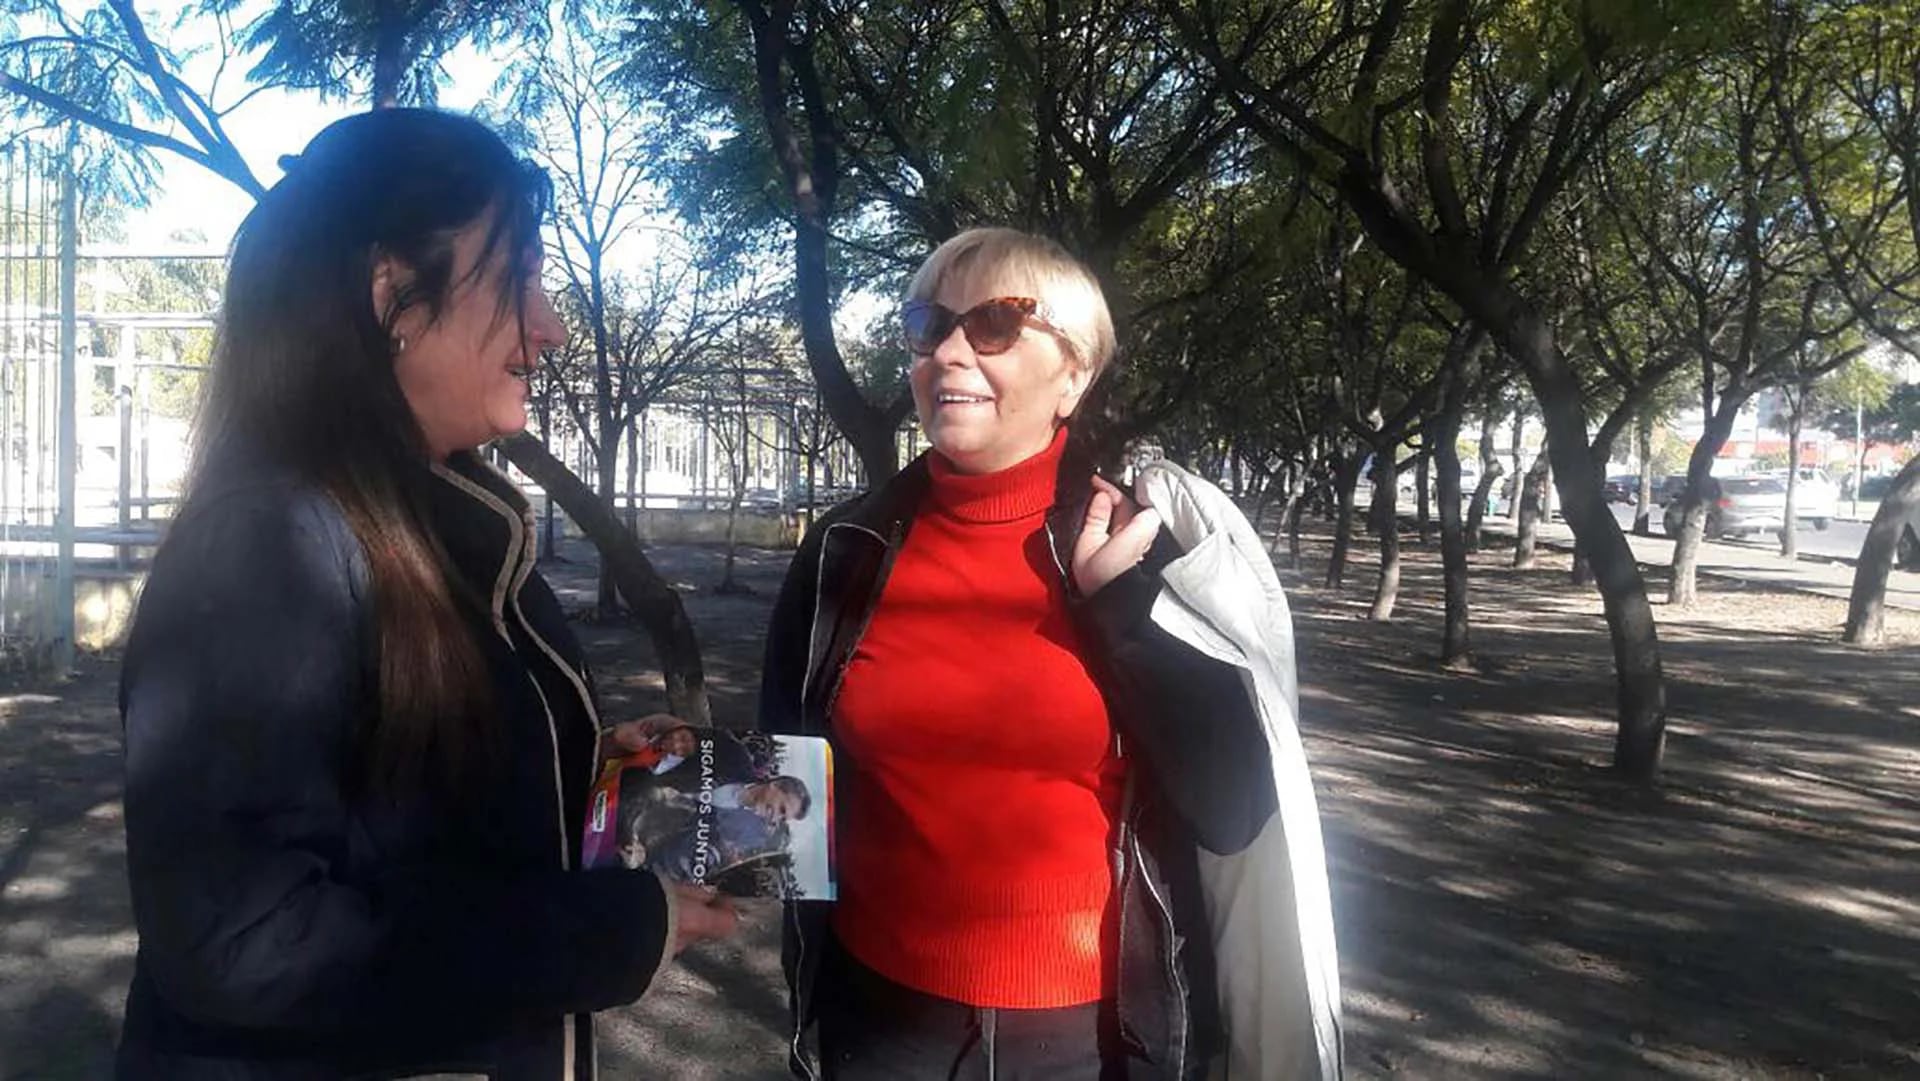 Córdoba: la senadora nacional, Laura Rodríguez Machado, recorrió y dialogó hoy con vecinos y comerciantes cordobeses en el marco del timbreo nacional de la coalición Cambiemos